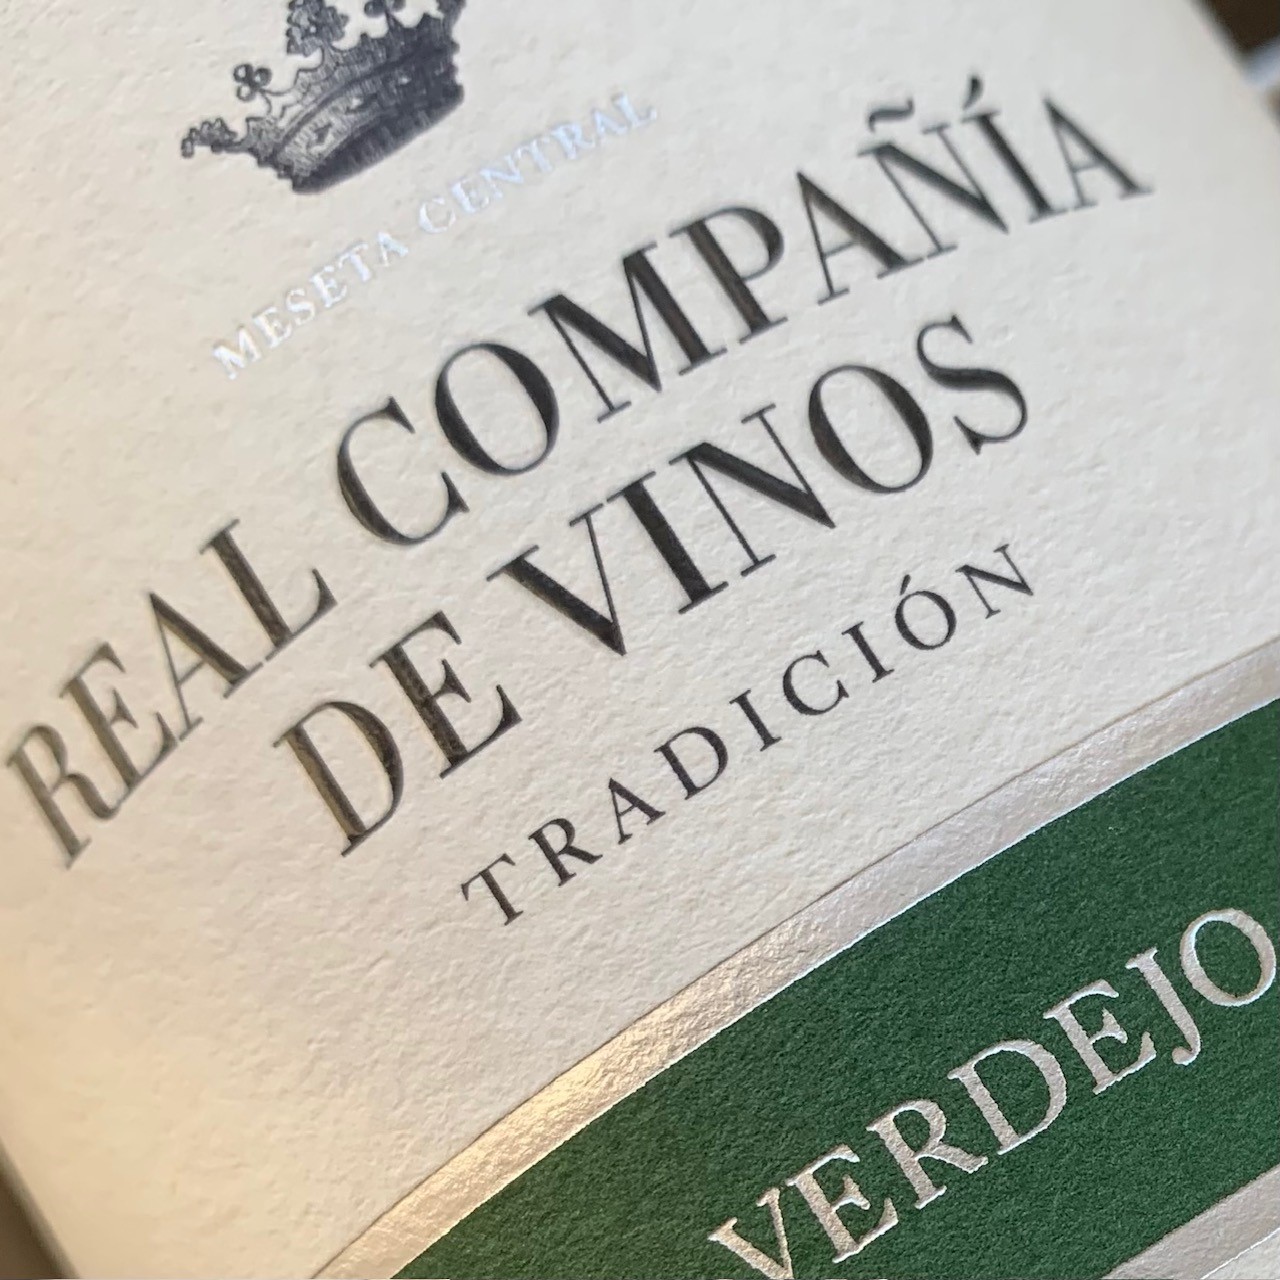 Verdejo Real Compania de Vinos front label